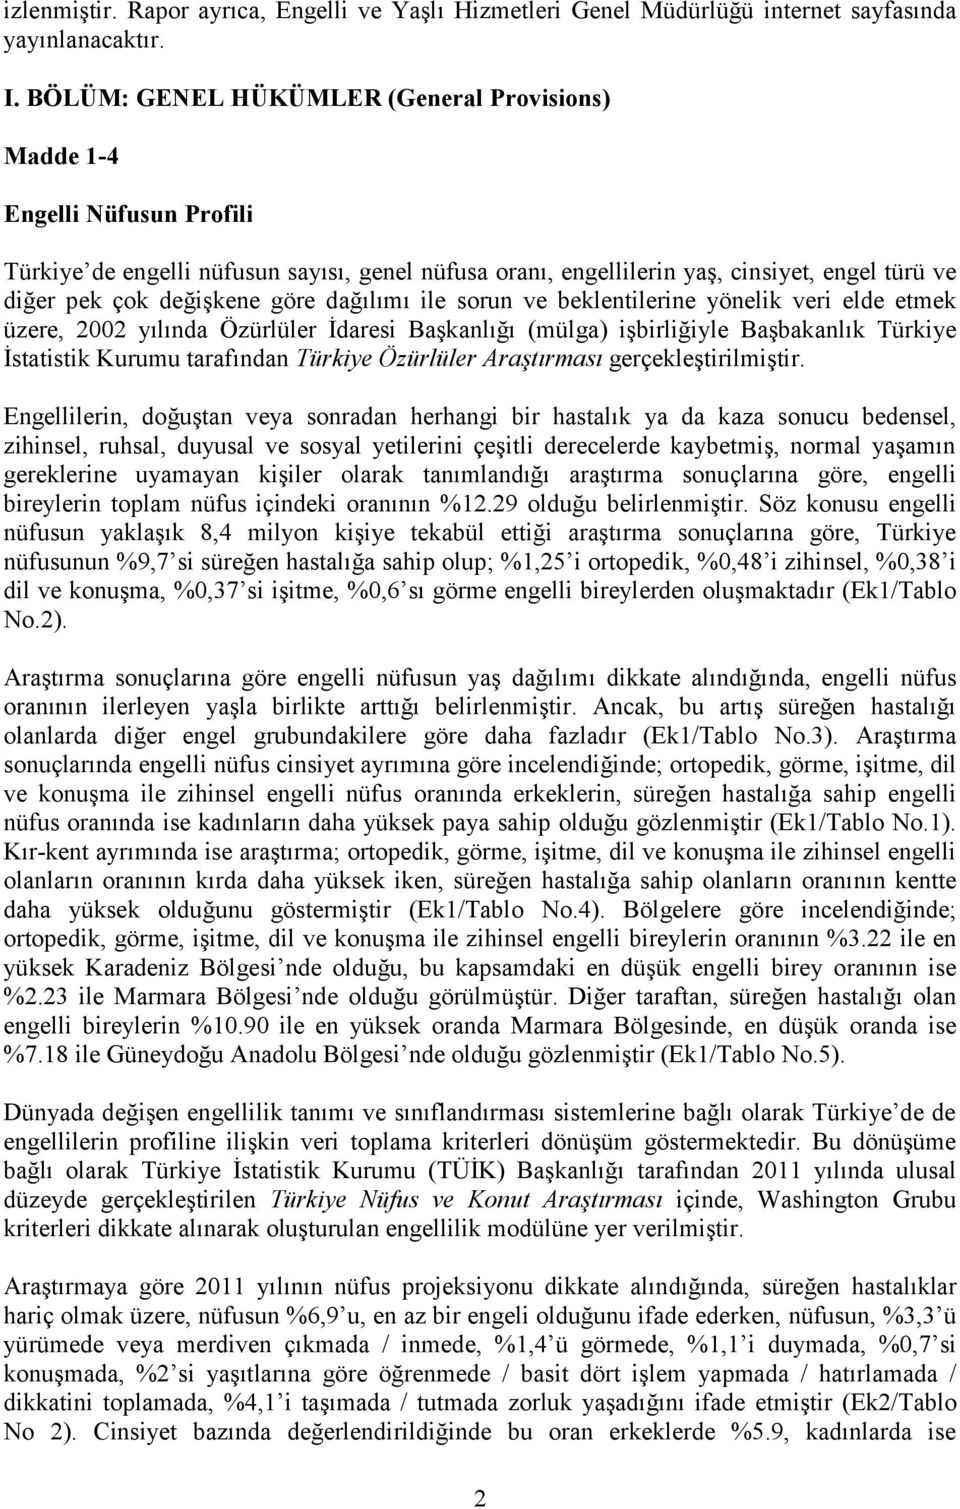 göre dağılımı ile sorun ve beklentilerine yönelik veri elde etmek üzere, 2002 yılında Özürlüler İdaresi Başkanlığı (mülga) işbirliğiyle Başbakanlık Türkiye İstatistik Kurumu tarafından Türkiye